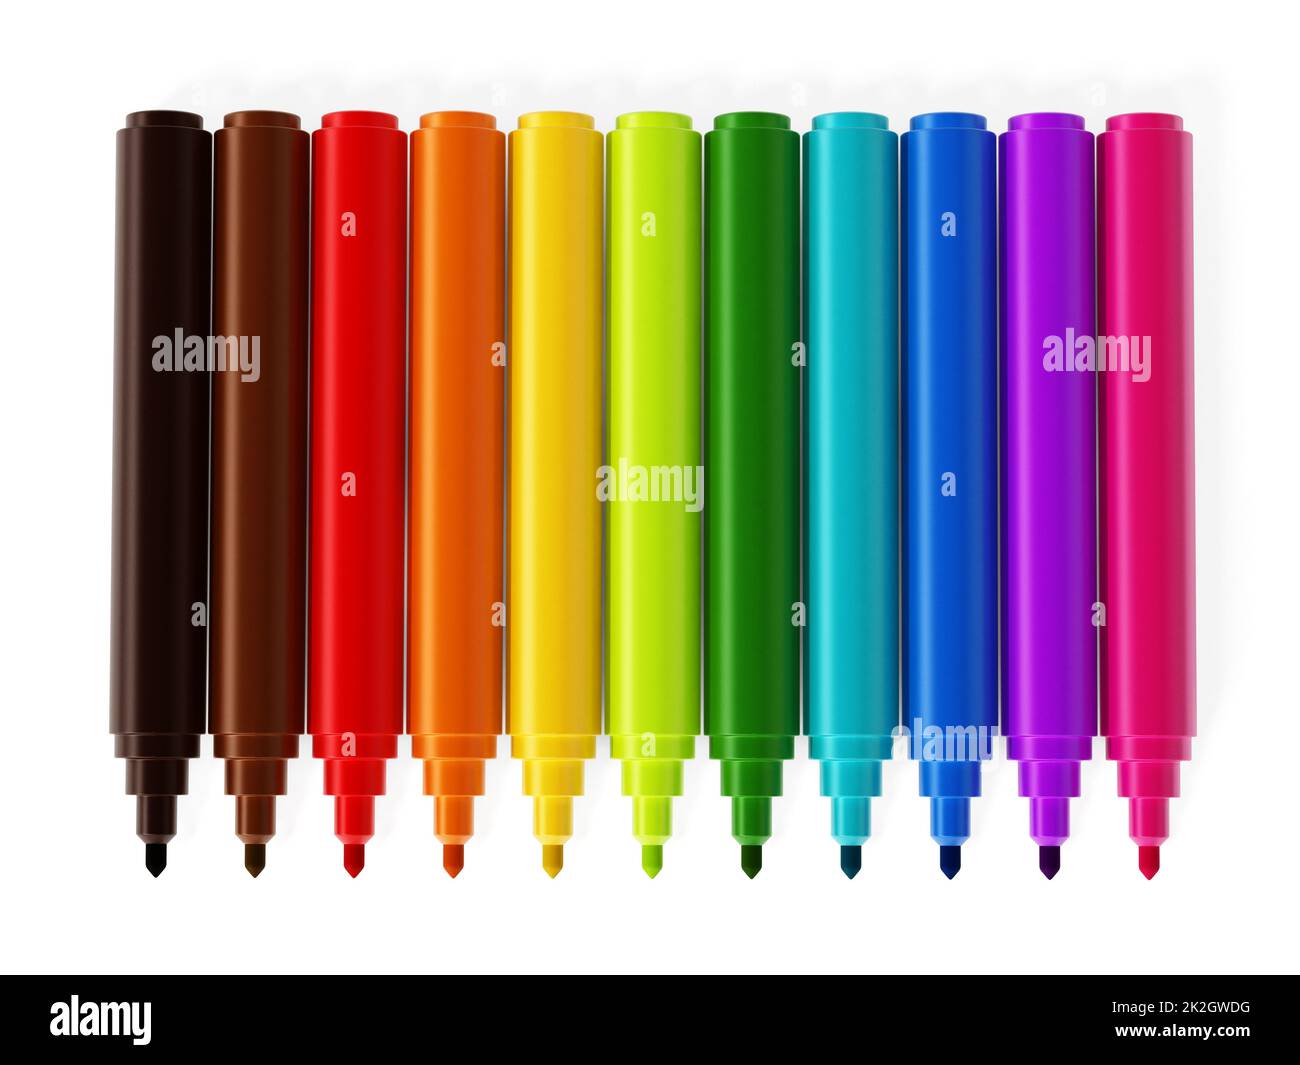 https://c8.alamy.com/comp/2K2GWDG/color-marker-color-pen-set-2K2GWDG.jpg